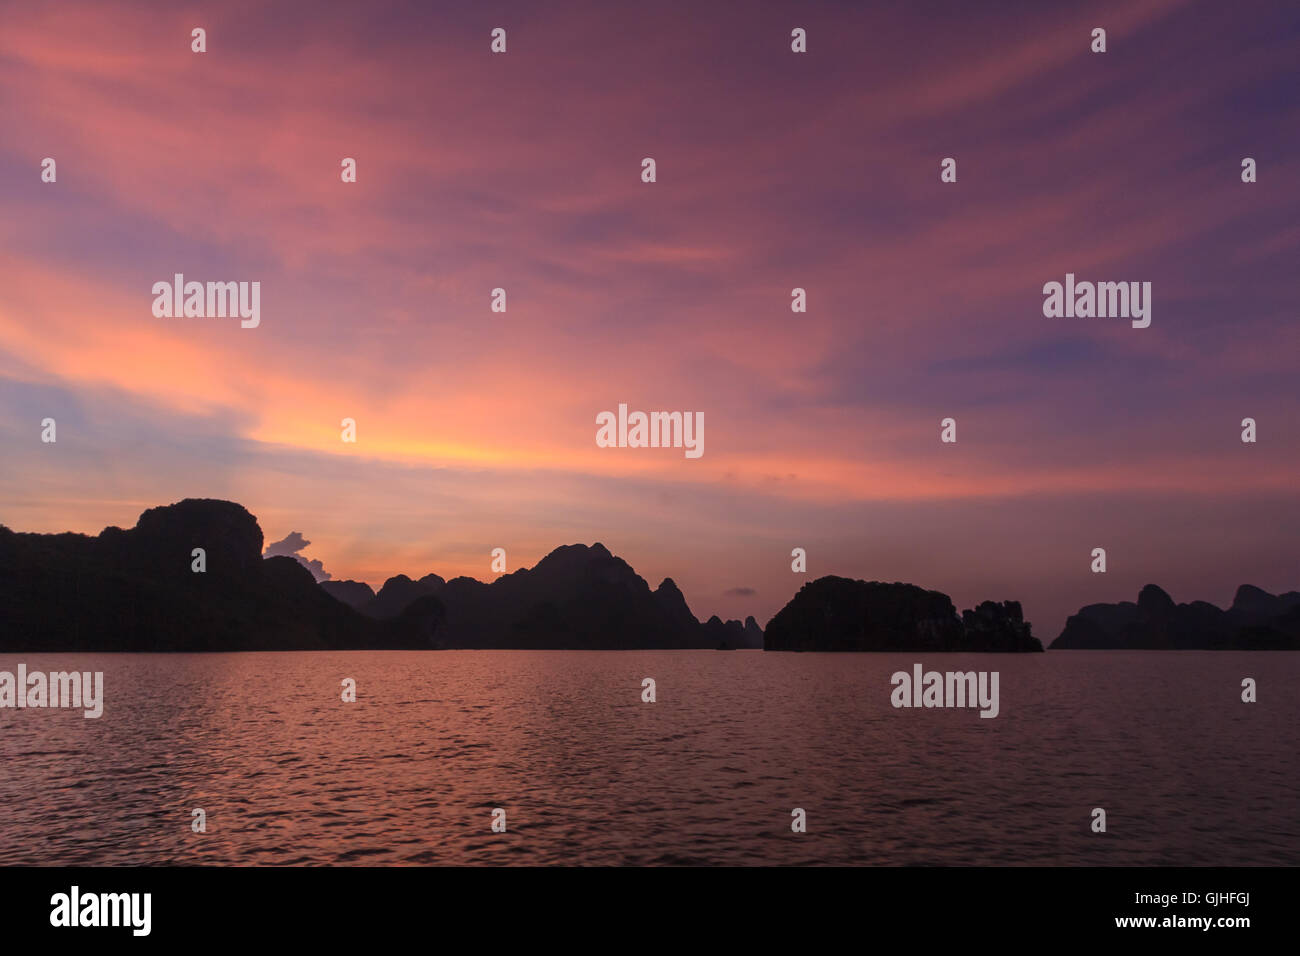 Silhouette de karsts calcaire au coucher du soleil, la baie d'Ha Long, Vietnam Banque D'Images